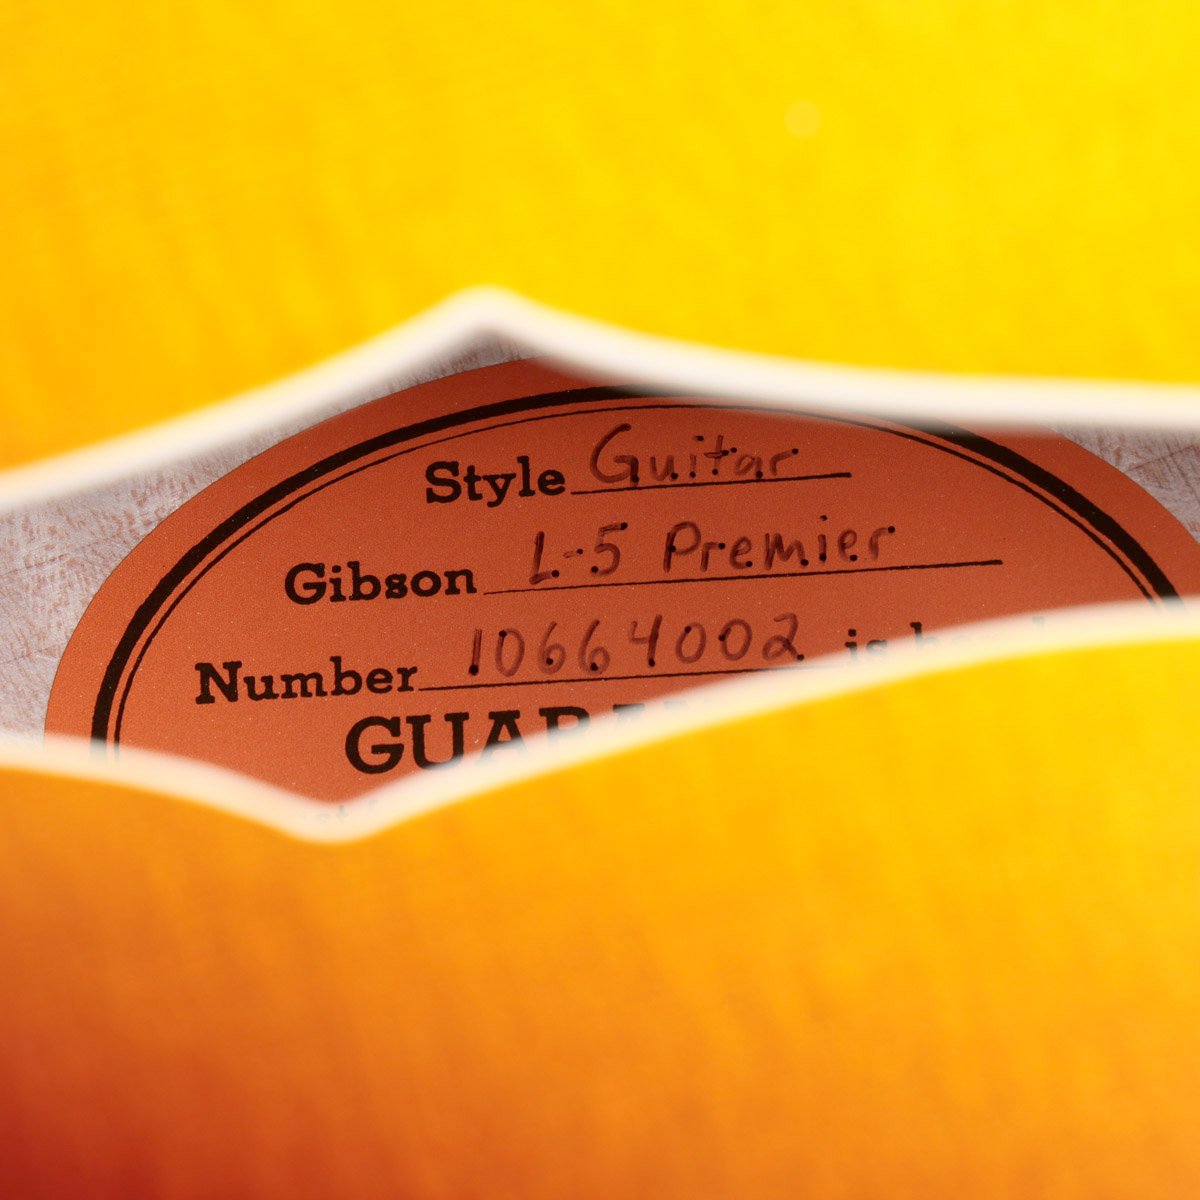 [SN 10664002] USED GIBSON CUSTOM / L-5 Premier Vintage Sunburst [08]